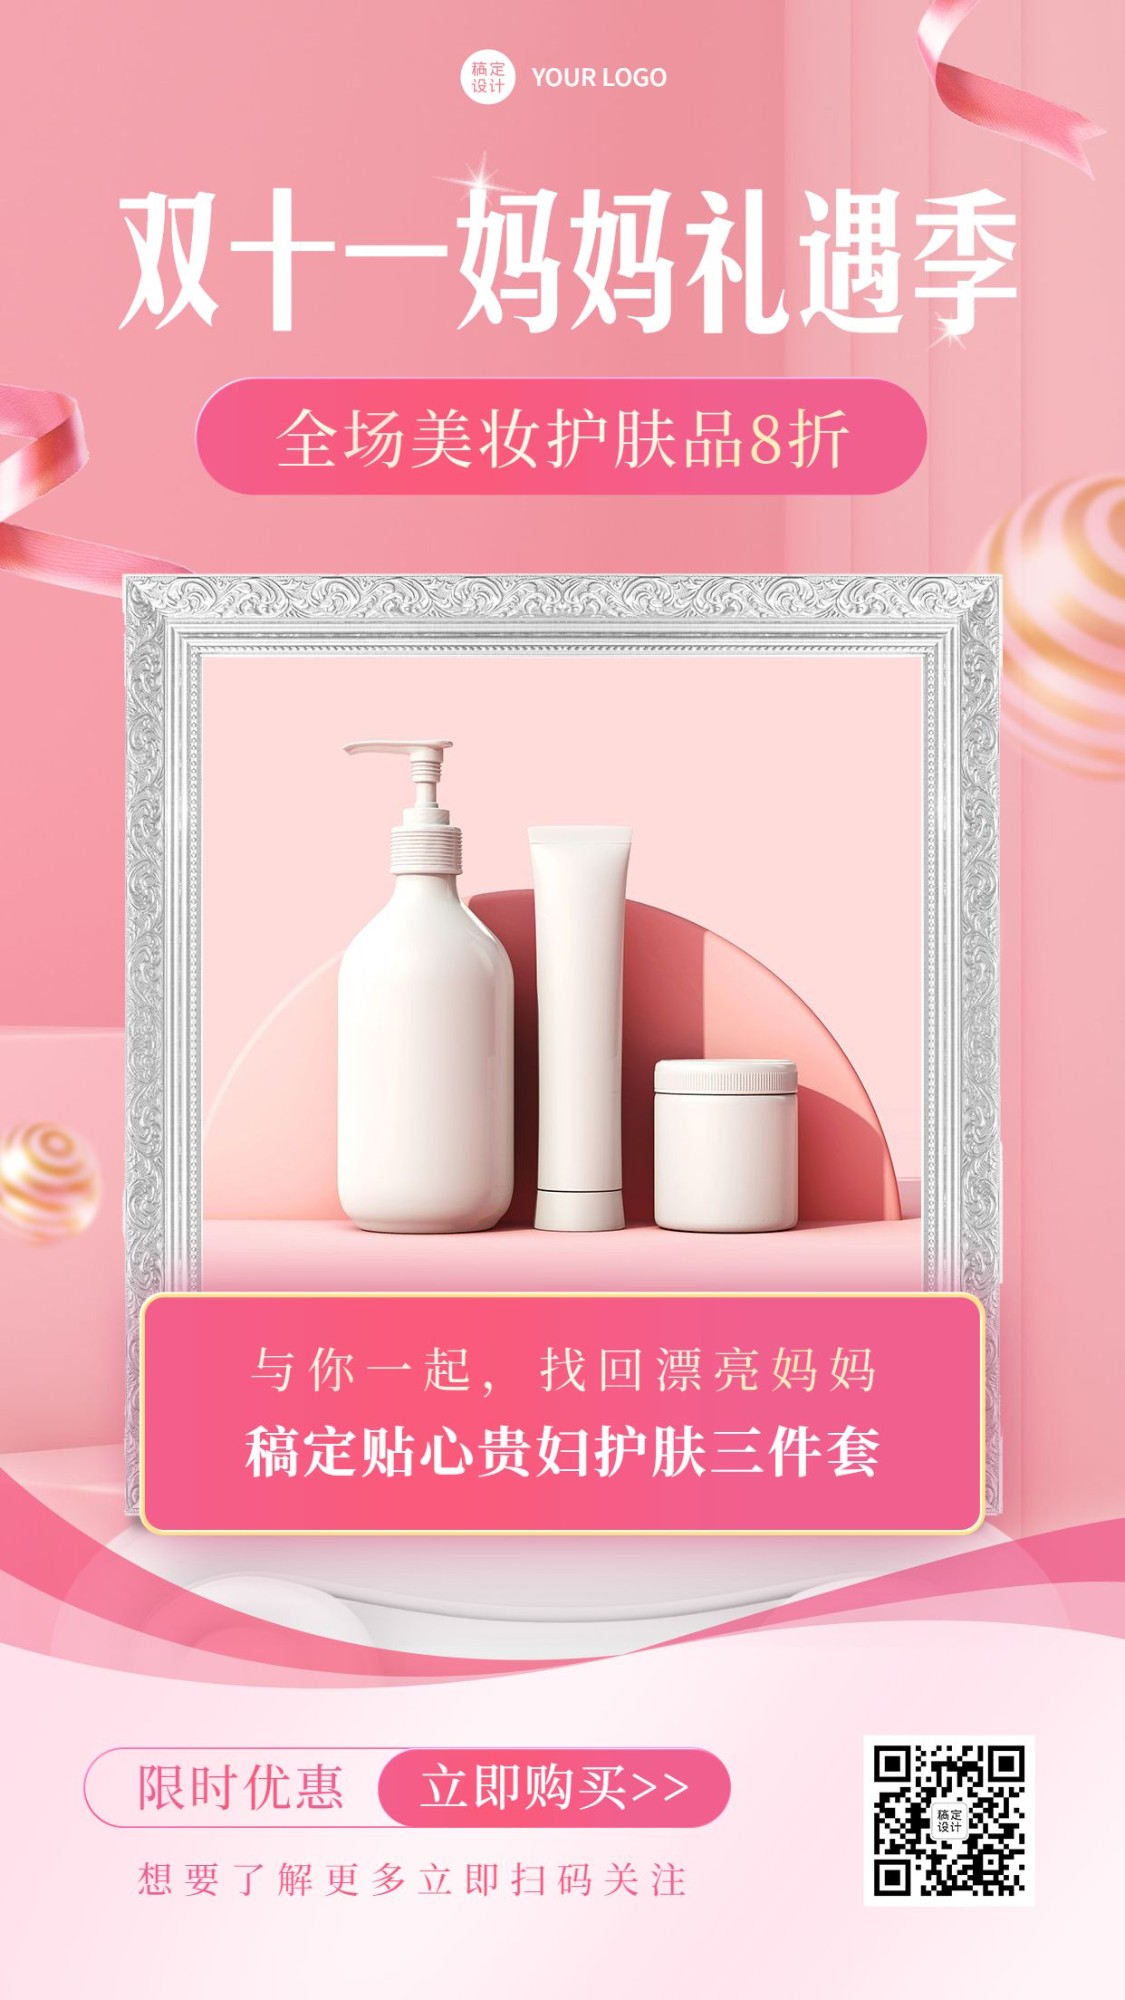 双十一节日营销美妆护肤产品展示海报预览效果